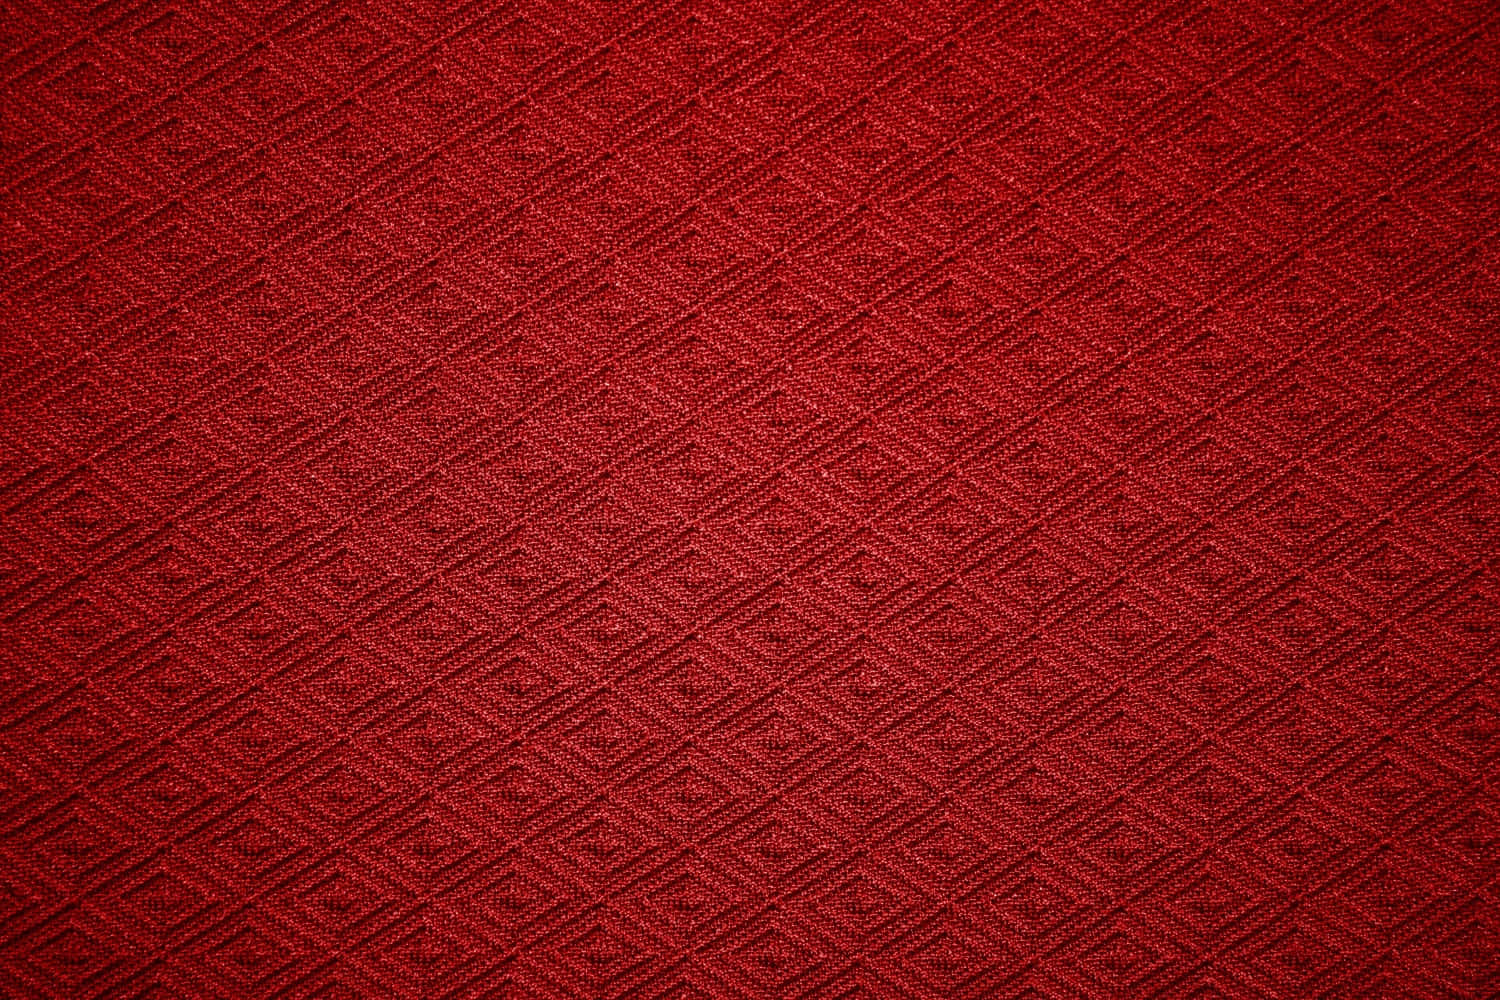 Imágenesde Textura De Tela En Color Rojo Con Diseño De Diamantes.